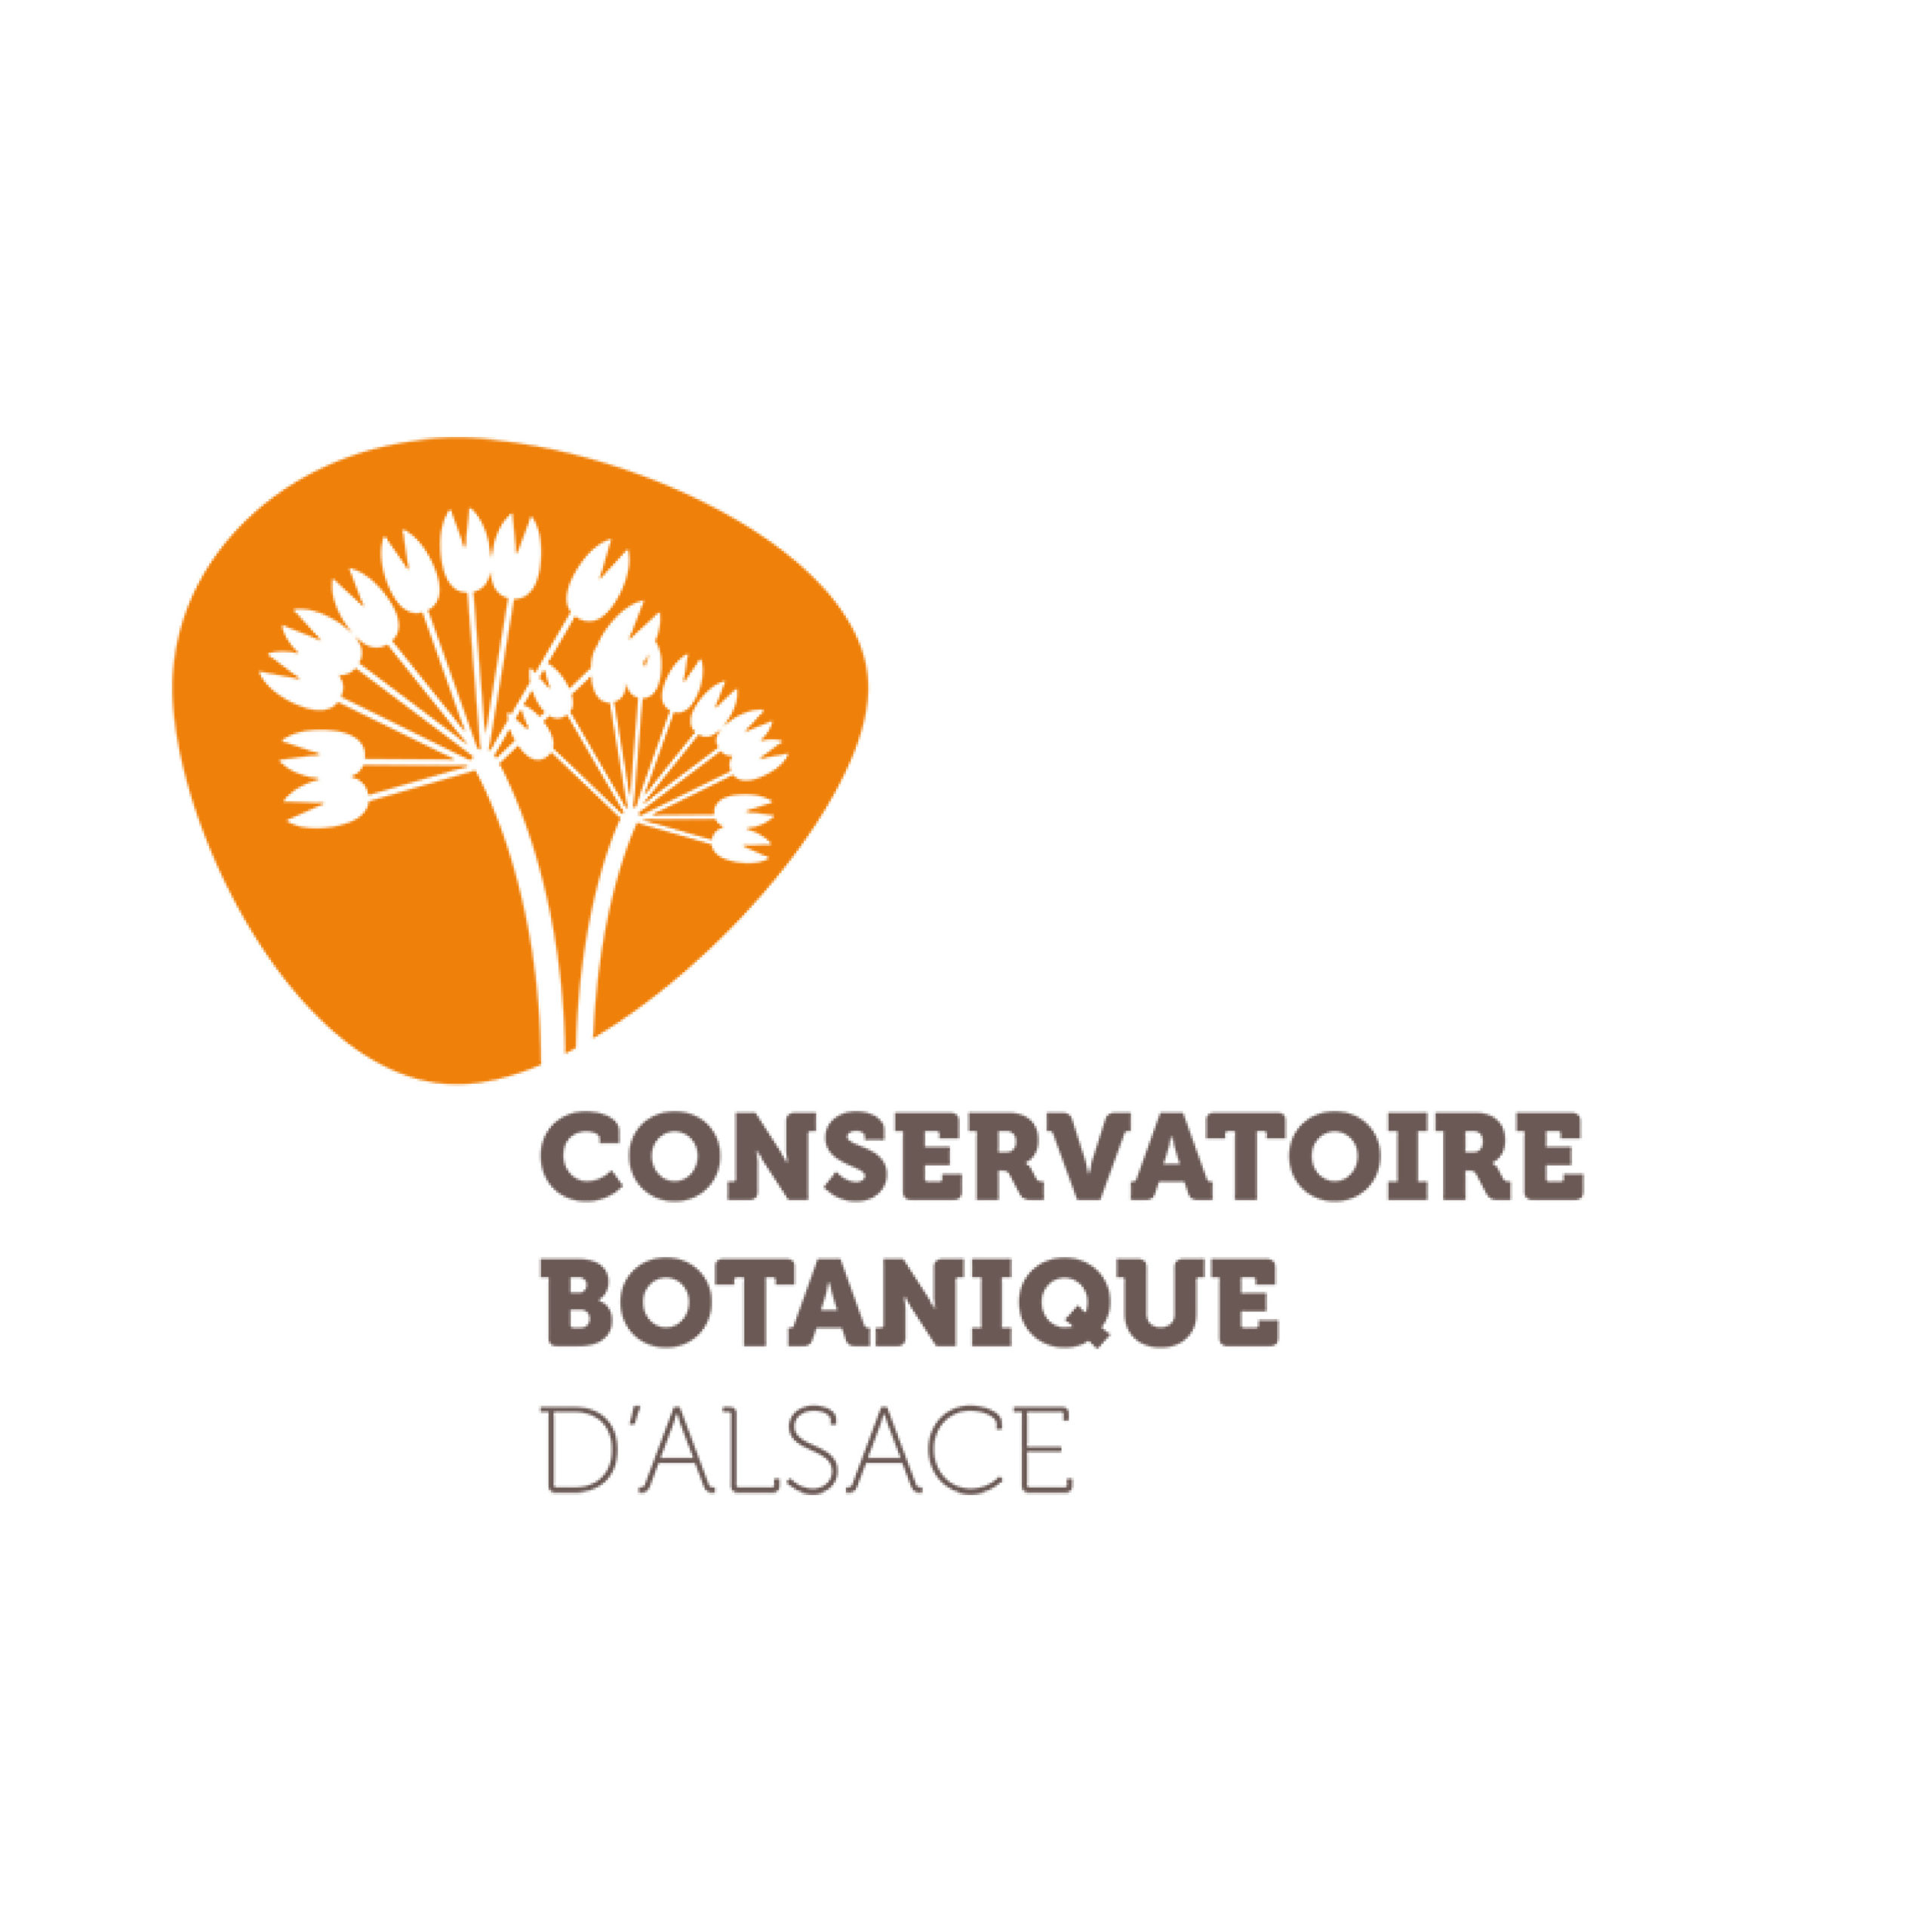 Conservatoire Botanique d’Alsace (CBA)